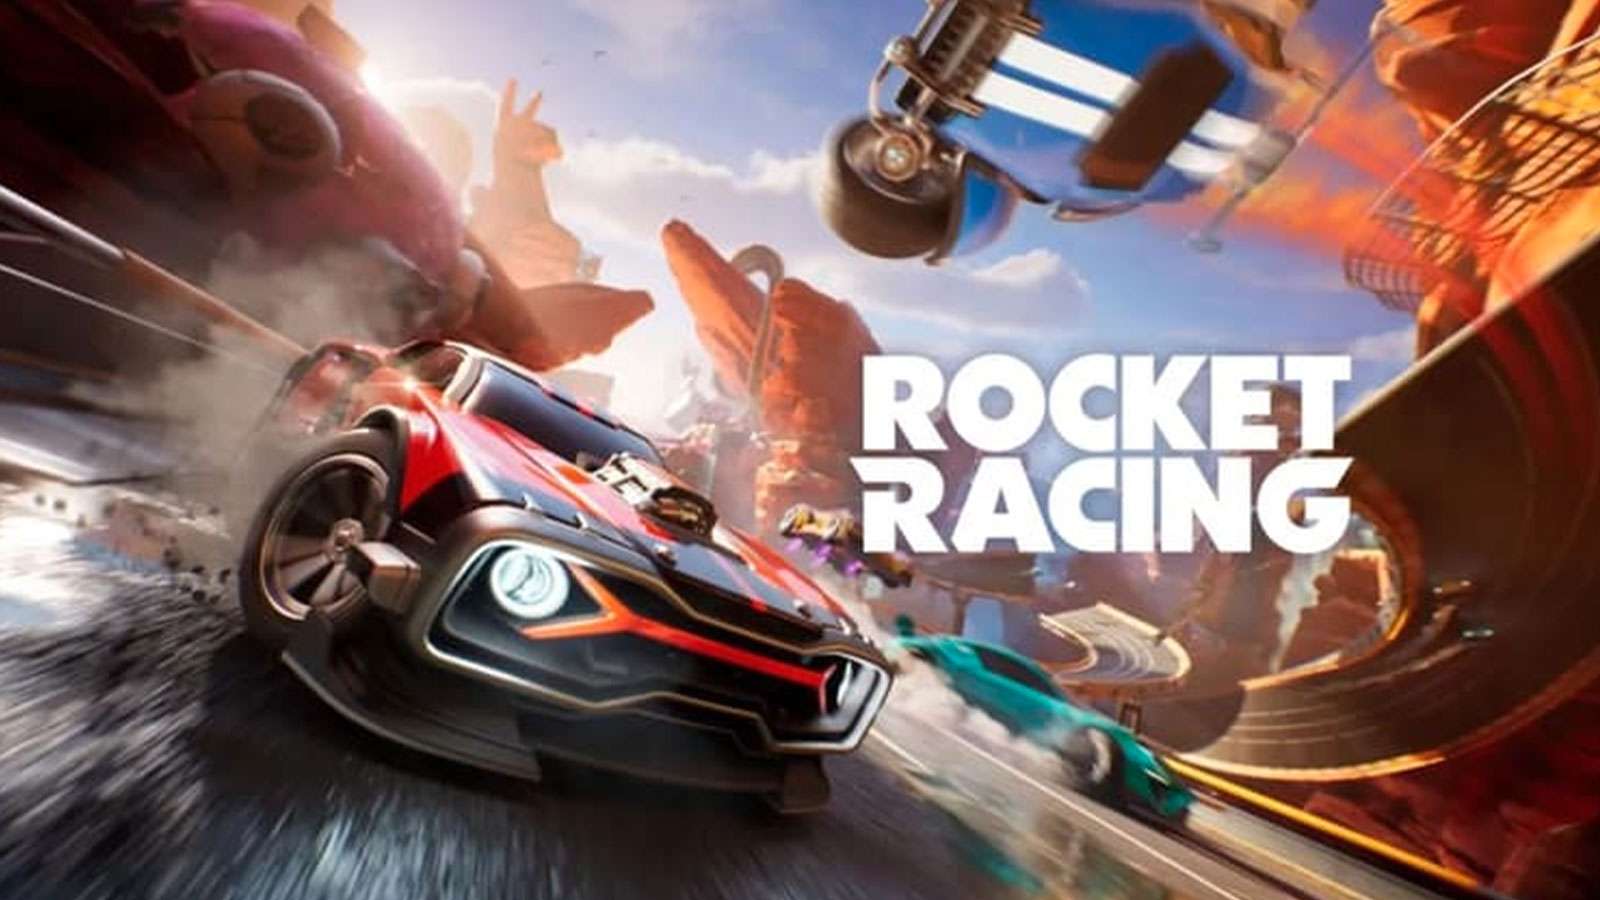 Rocket Racing dans Fortnite